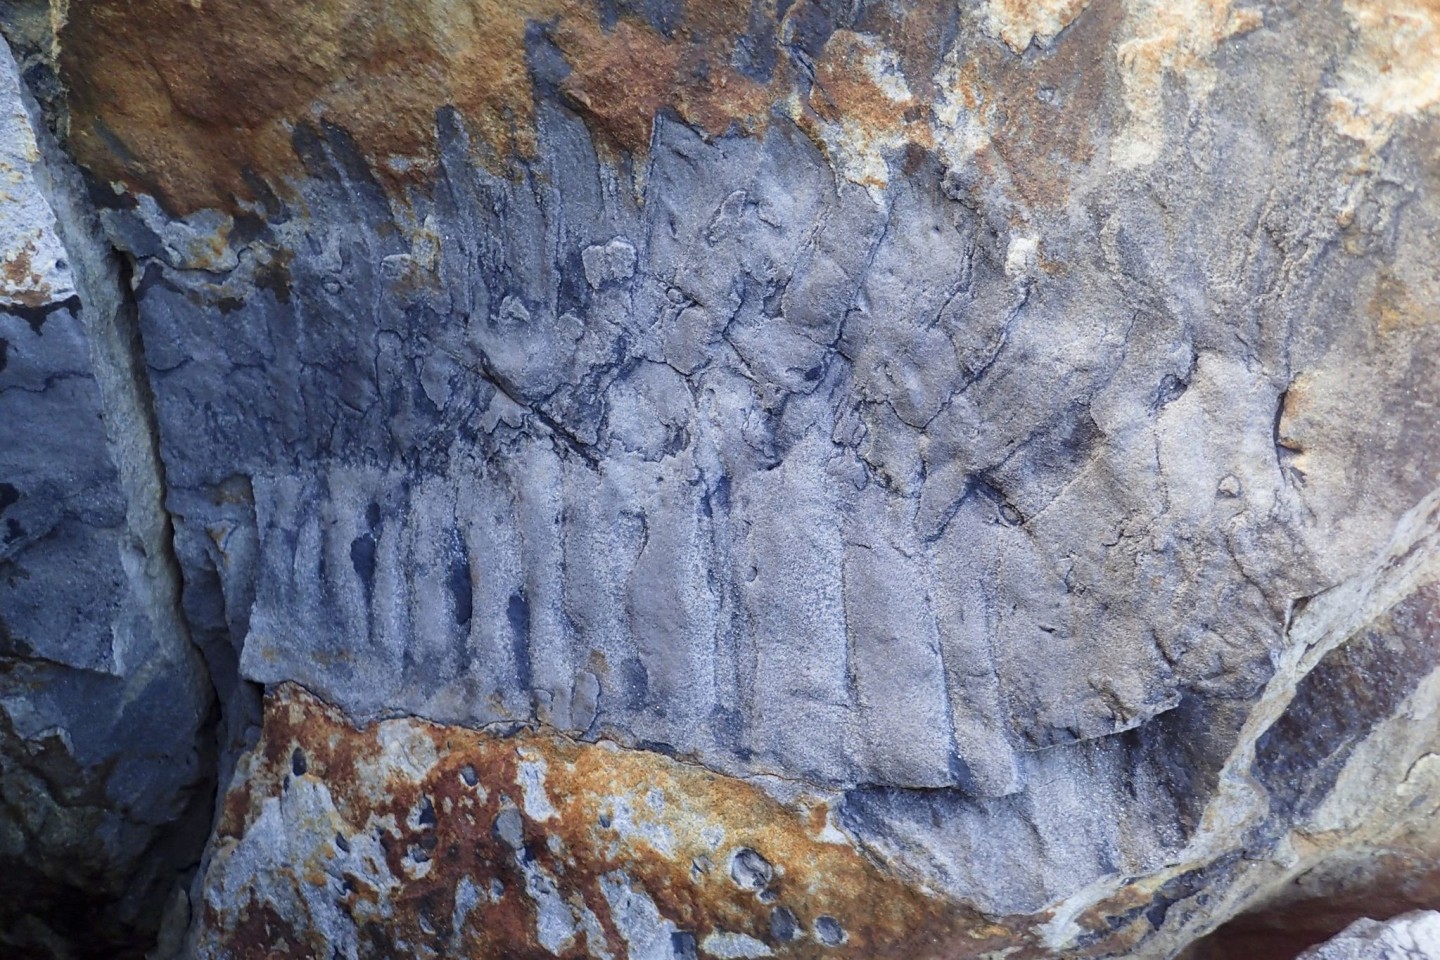 Handout-Foto des Arthropleura-Fossils am Strand von Howick in Northumberland.